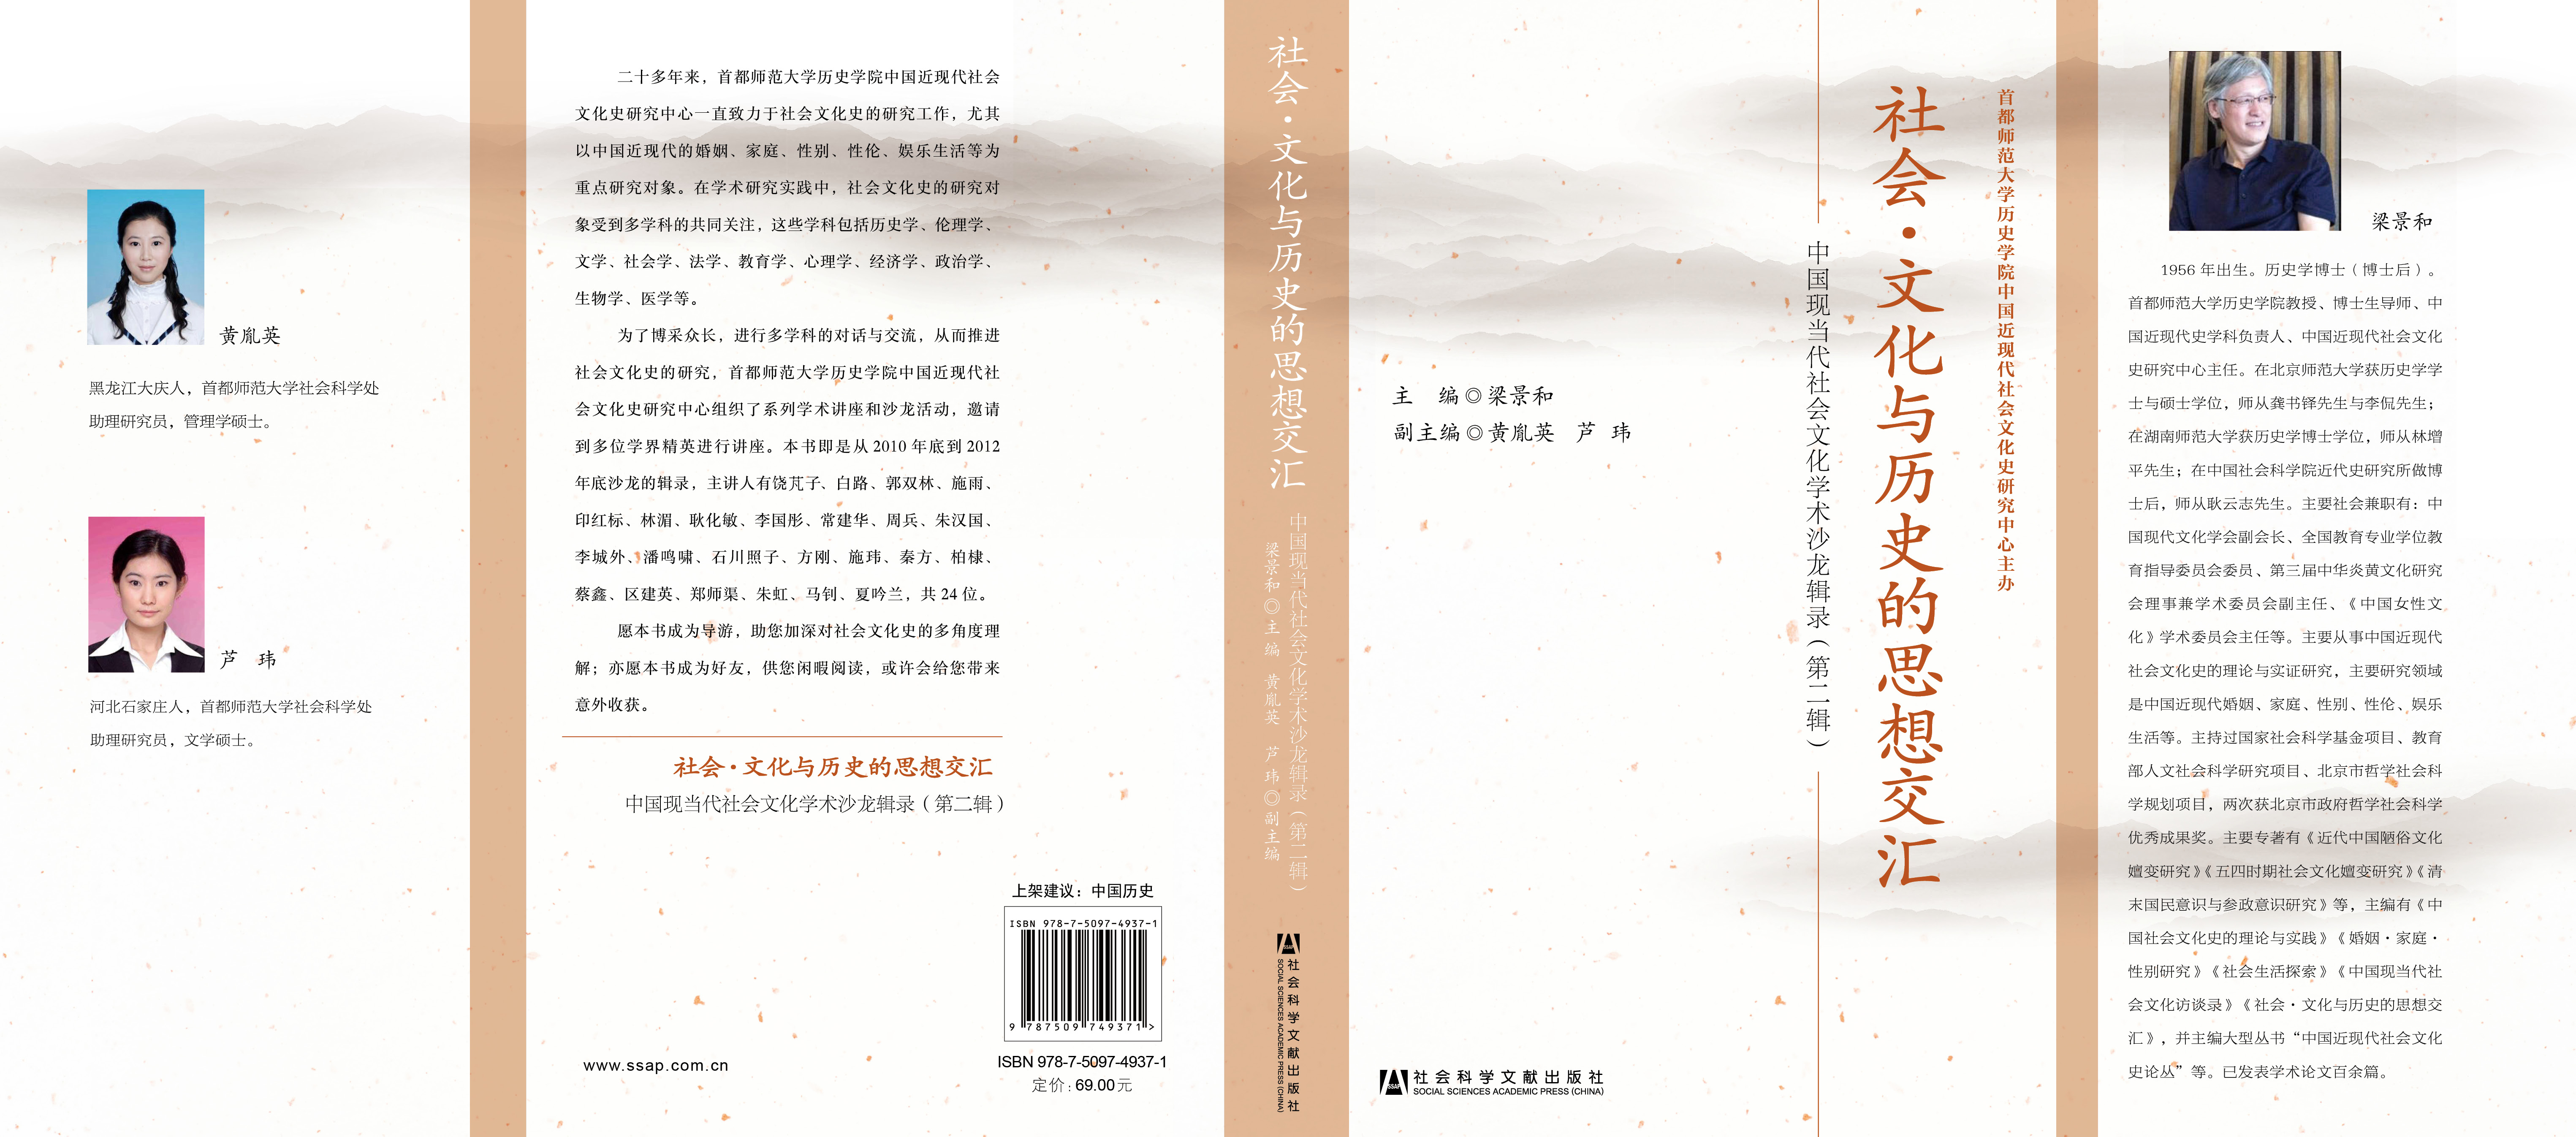 社会?文化与历史的思想交汇——中国现当代社会文化学术沙龙辑录（第二辑）